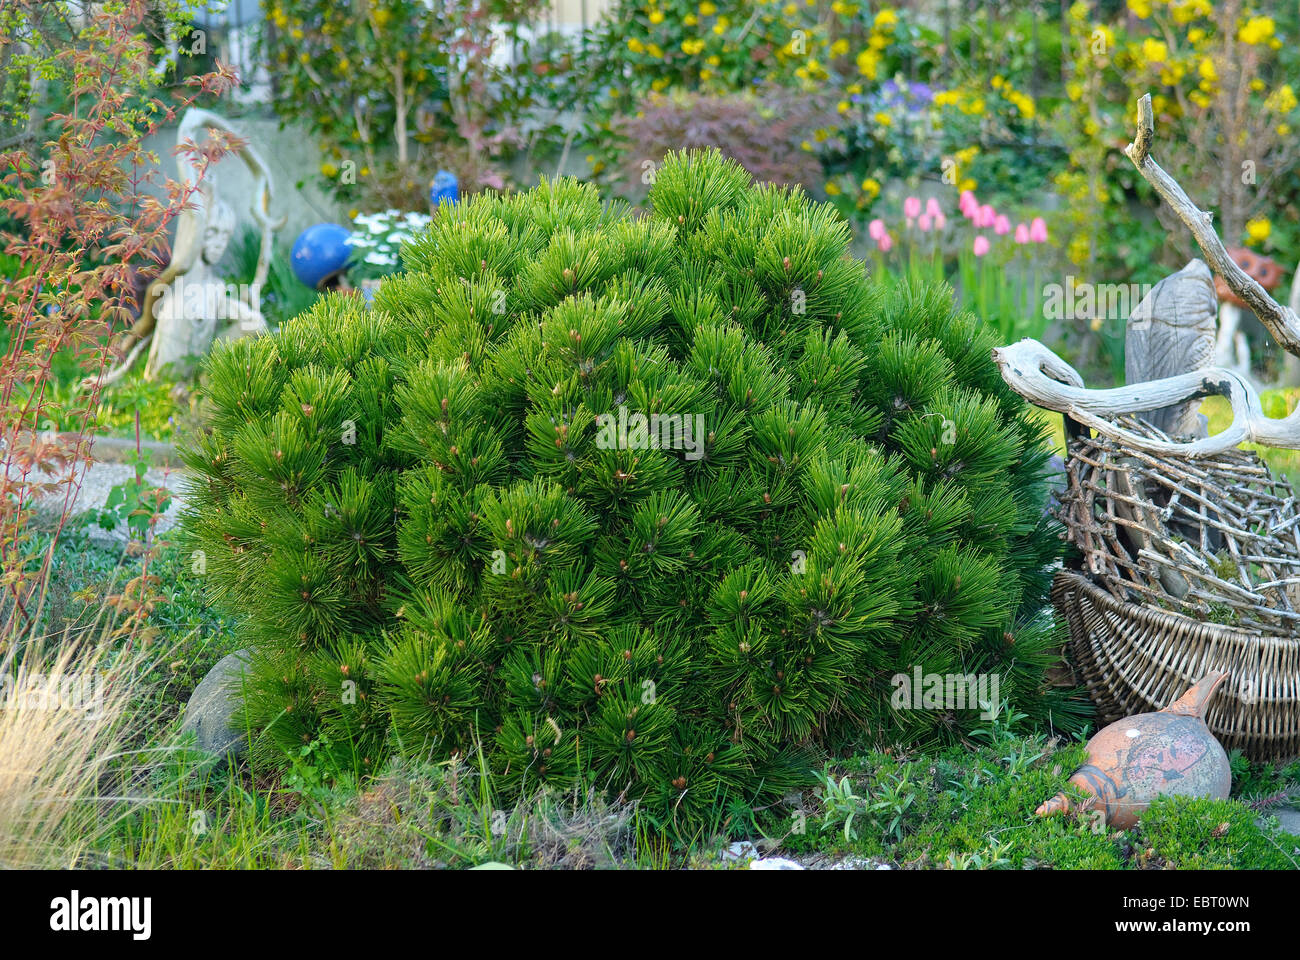 Bosnian Pine, Palebark Pine (Pinus heldreichii 'Smidtii', Pinus heldreichii Smidtii), cultivar Smidtii Stock Photo